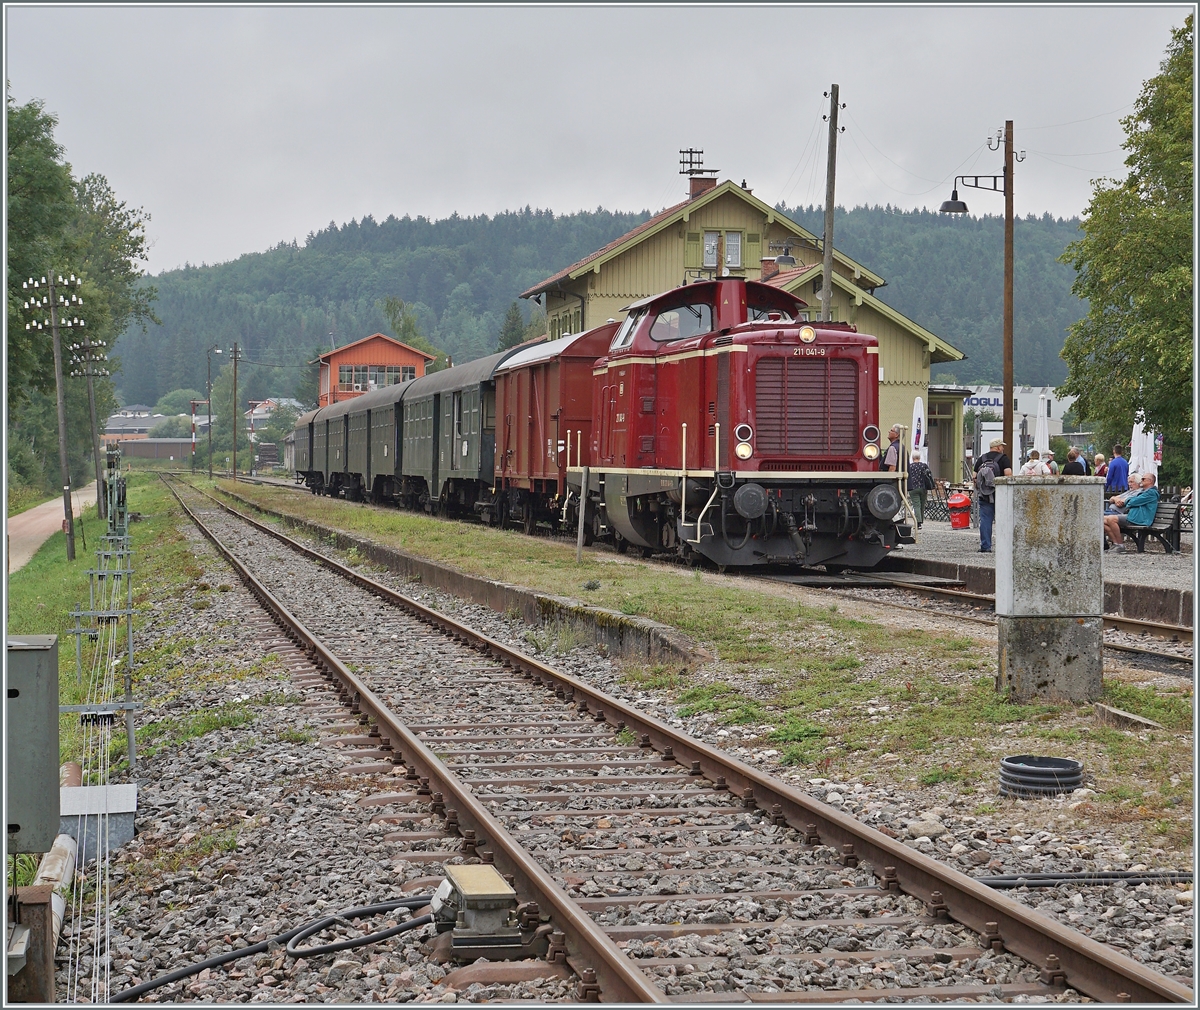 Die Diesellok 211 041-9 (92 80 1211 041-9 D-NeSA) mit einem stimmigen Zug aus Umbauwagen wartet als  Morgenzug  im Bahnhof Zollhaus Blumberg auf die Abfahrt.
Die Aufnahme entstand beim offenen Bahnübergang. 

27. August 2022